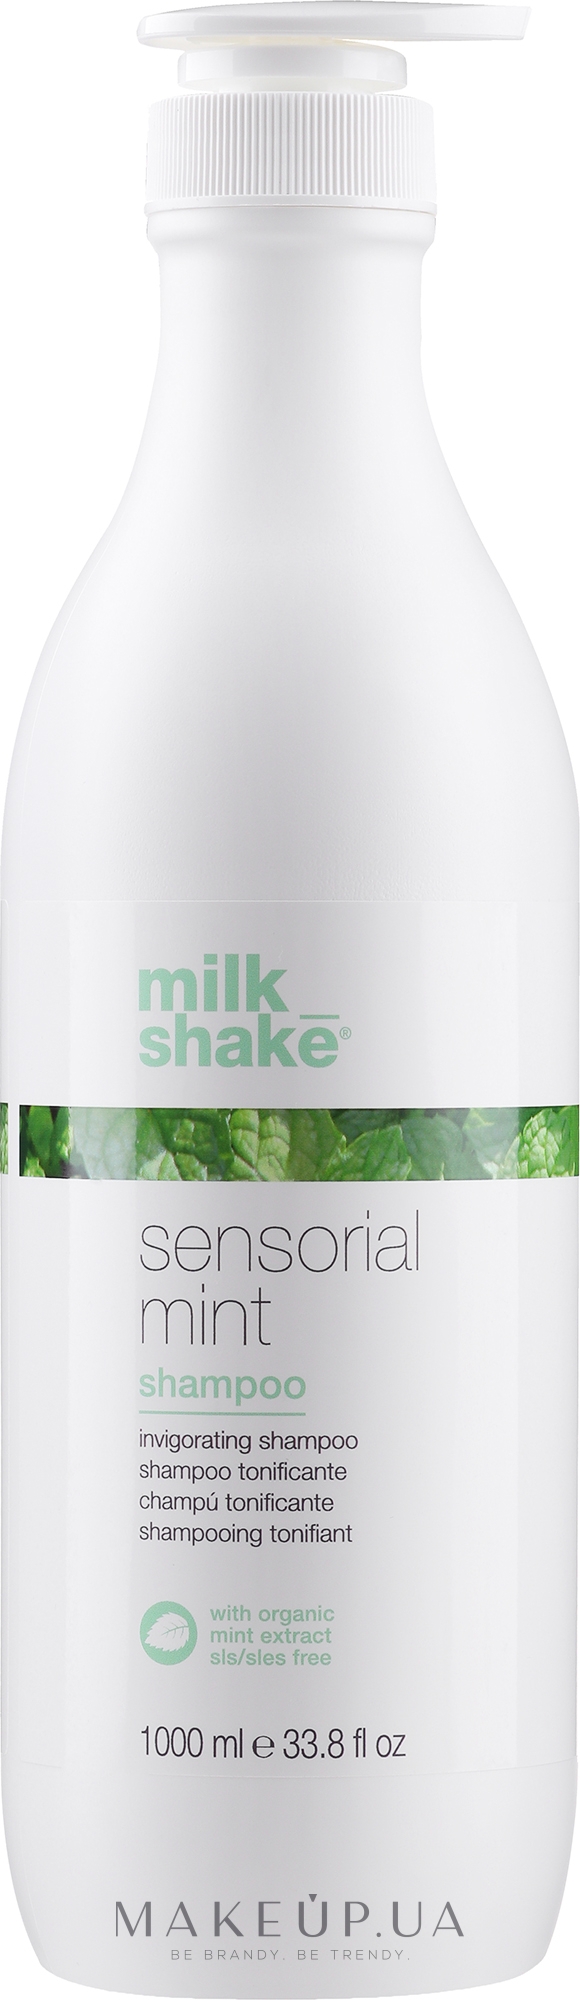 Підбадьорливий шампунь для волосся - Milk Shake Sensorial Mint Shampoo — фото 1000ml